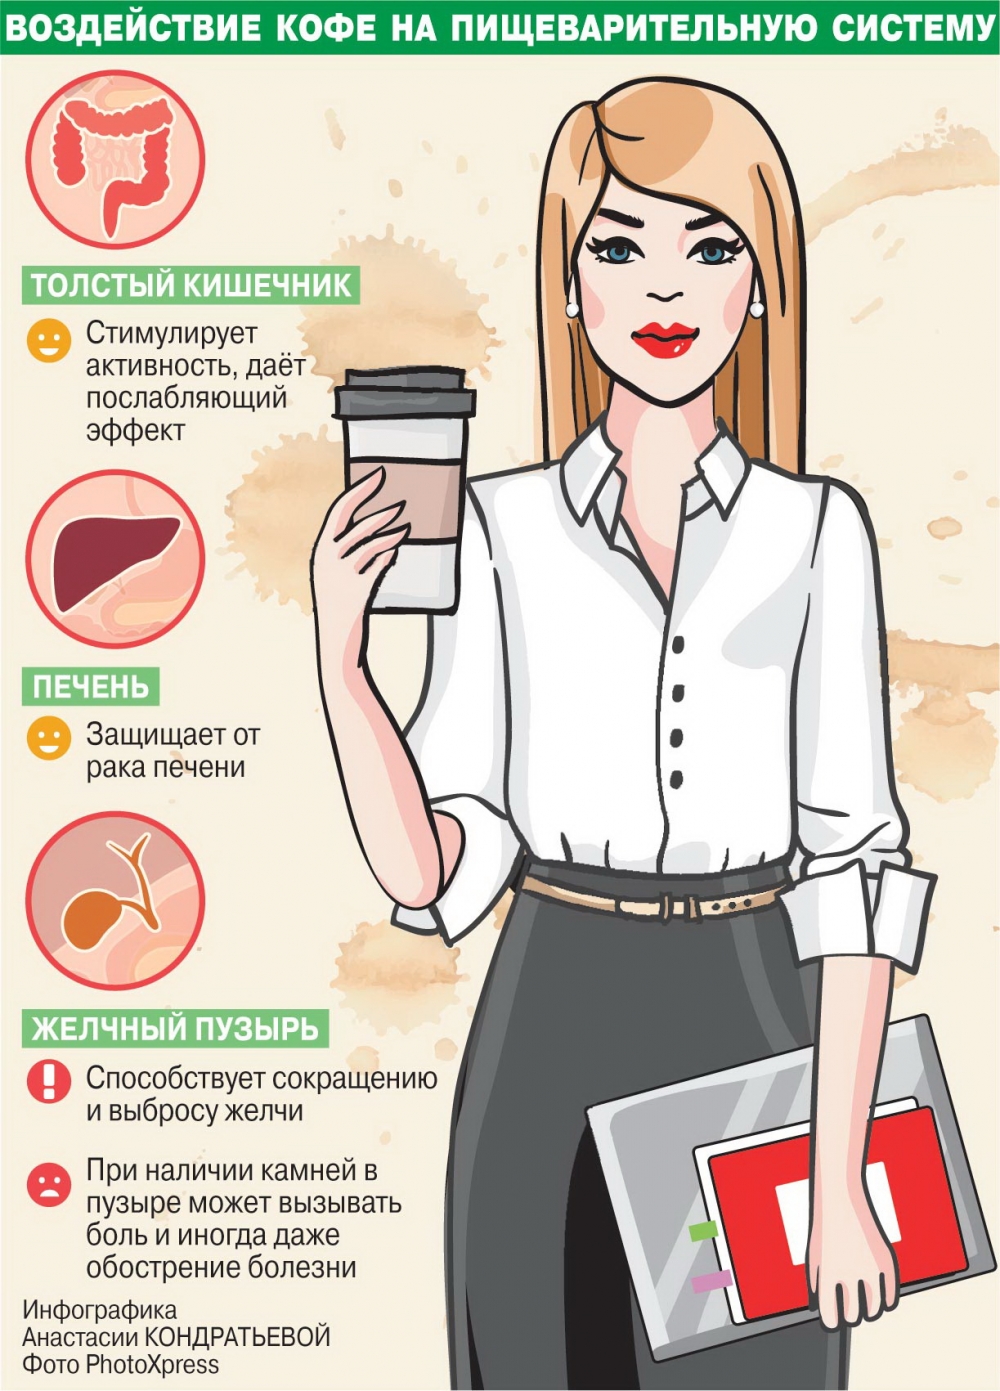 Вред кофе для печени. Кофе вредно. Полезность кофе для организма. Польза кофе. Влияние кофе на организм человека.